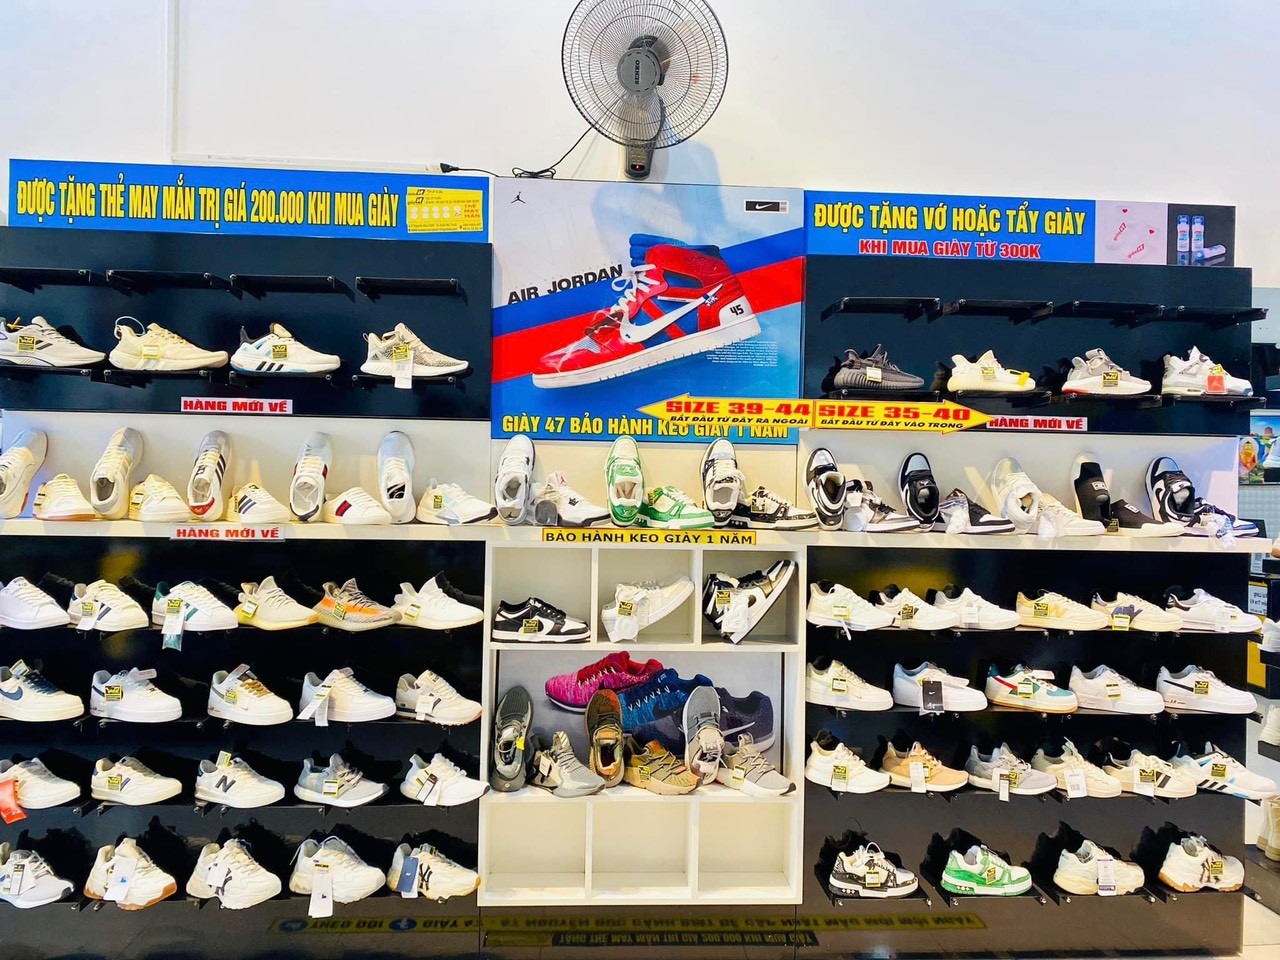 Cơ sở kinh doanh hàng hóa giả mạo nhãn hiệu Nike tại Đắk Lắk bị xử phạt 10 triệu đồng